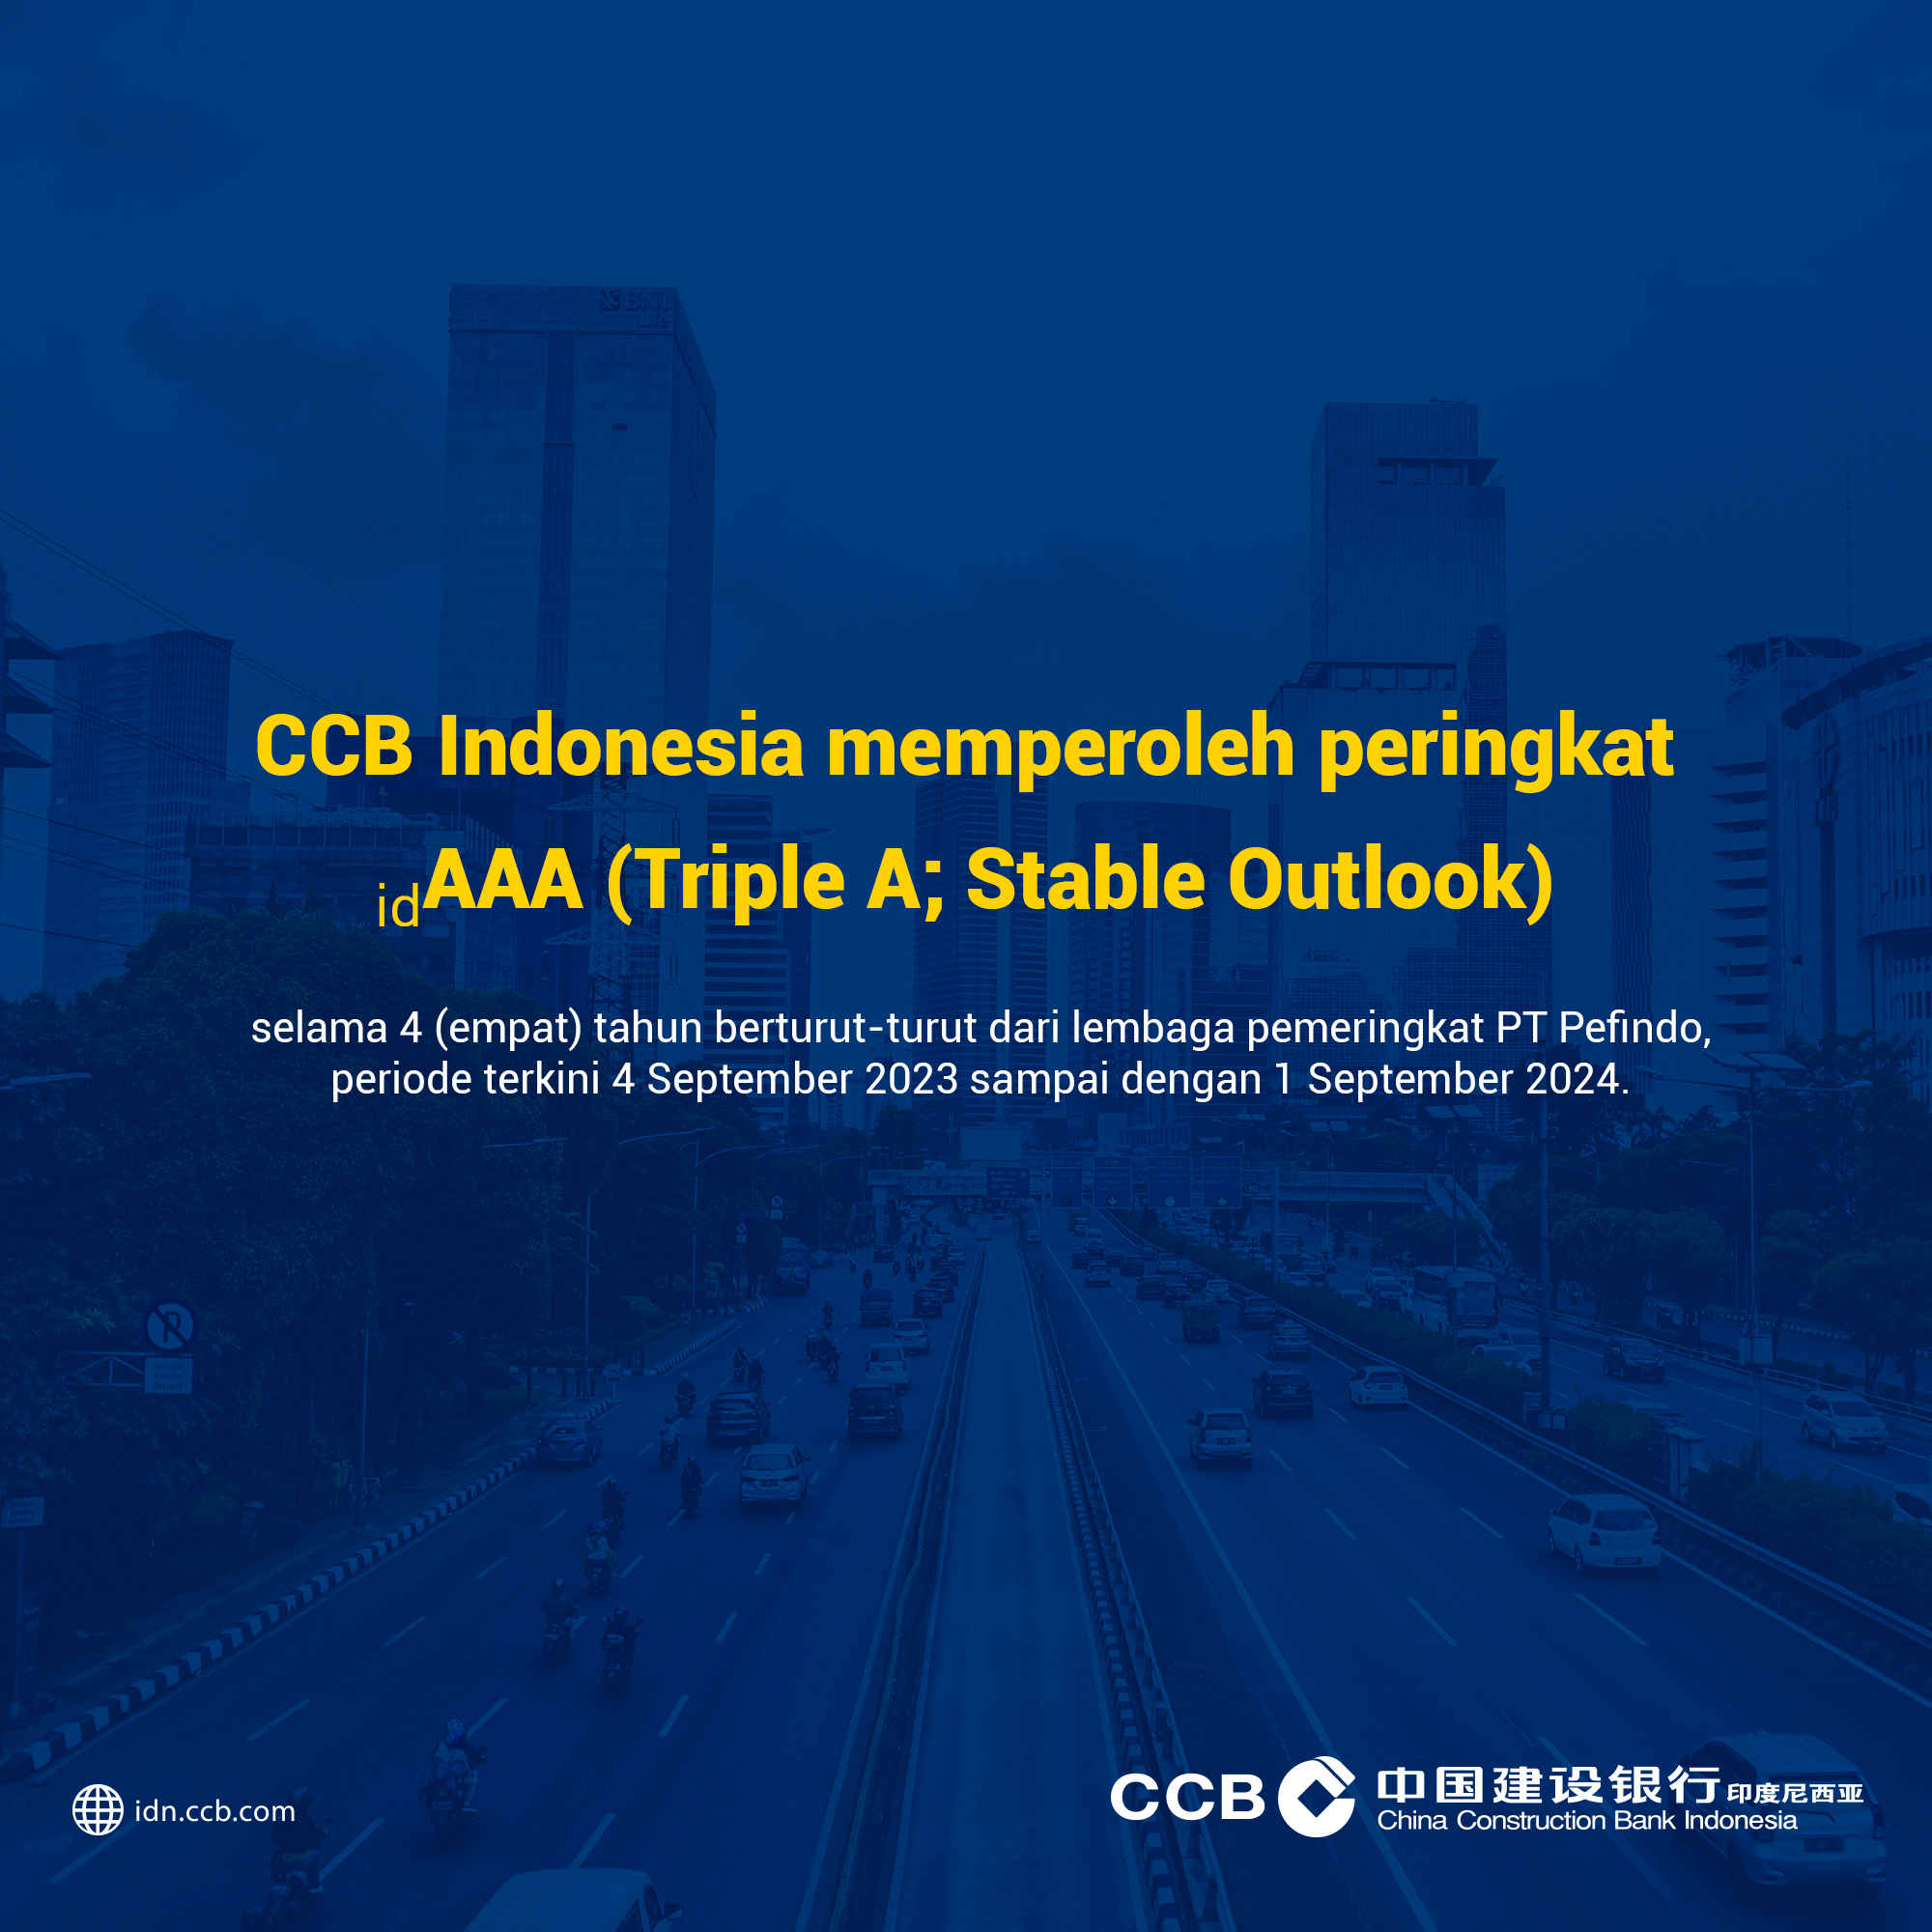 CCB Indonesia memperoleh rating idAAA